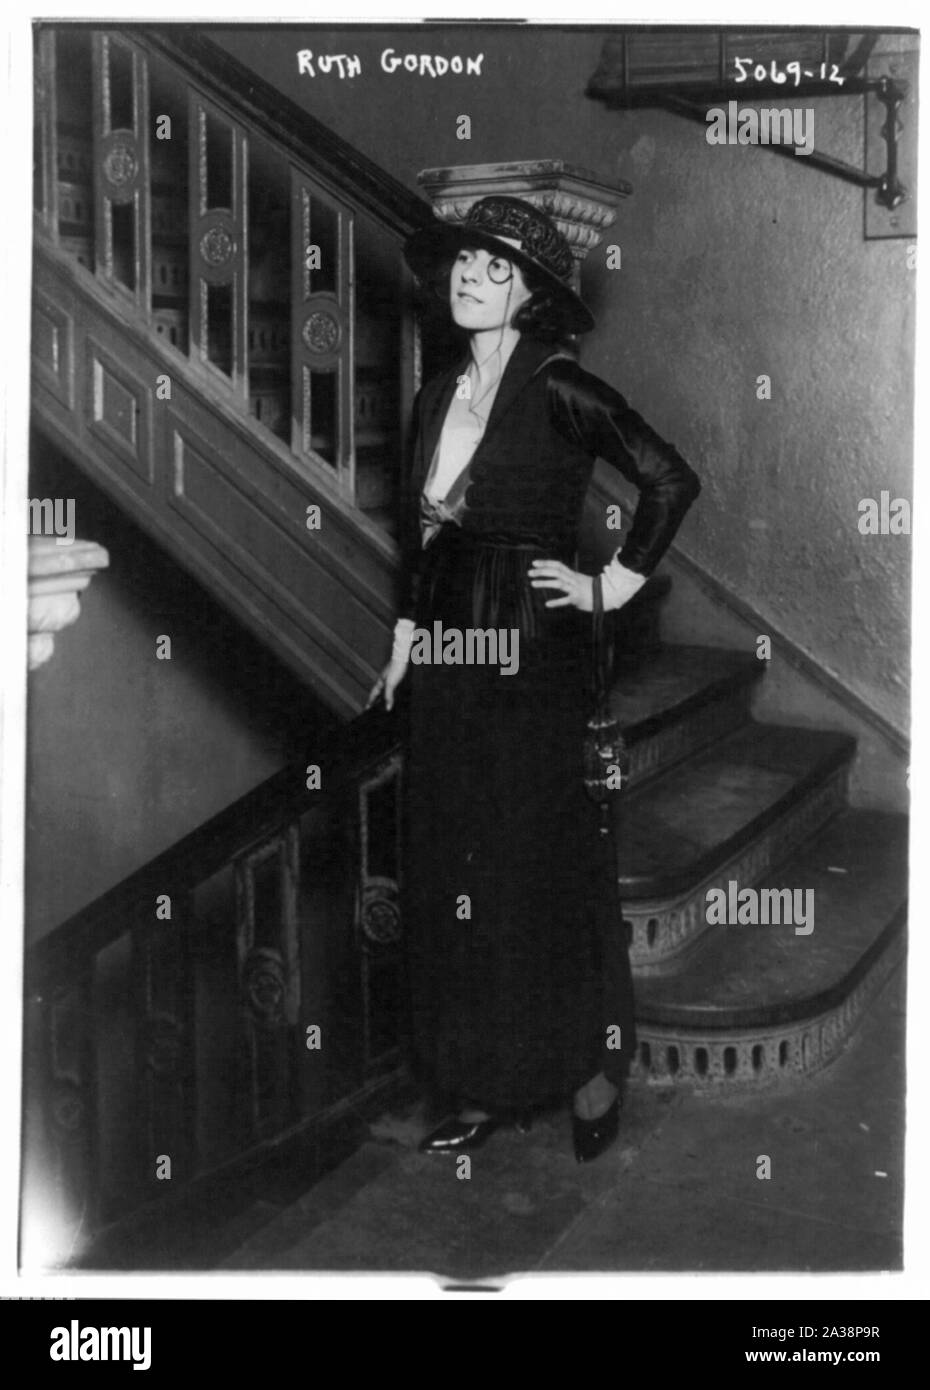 Ruth Gordon, 1896- Stock Photo